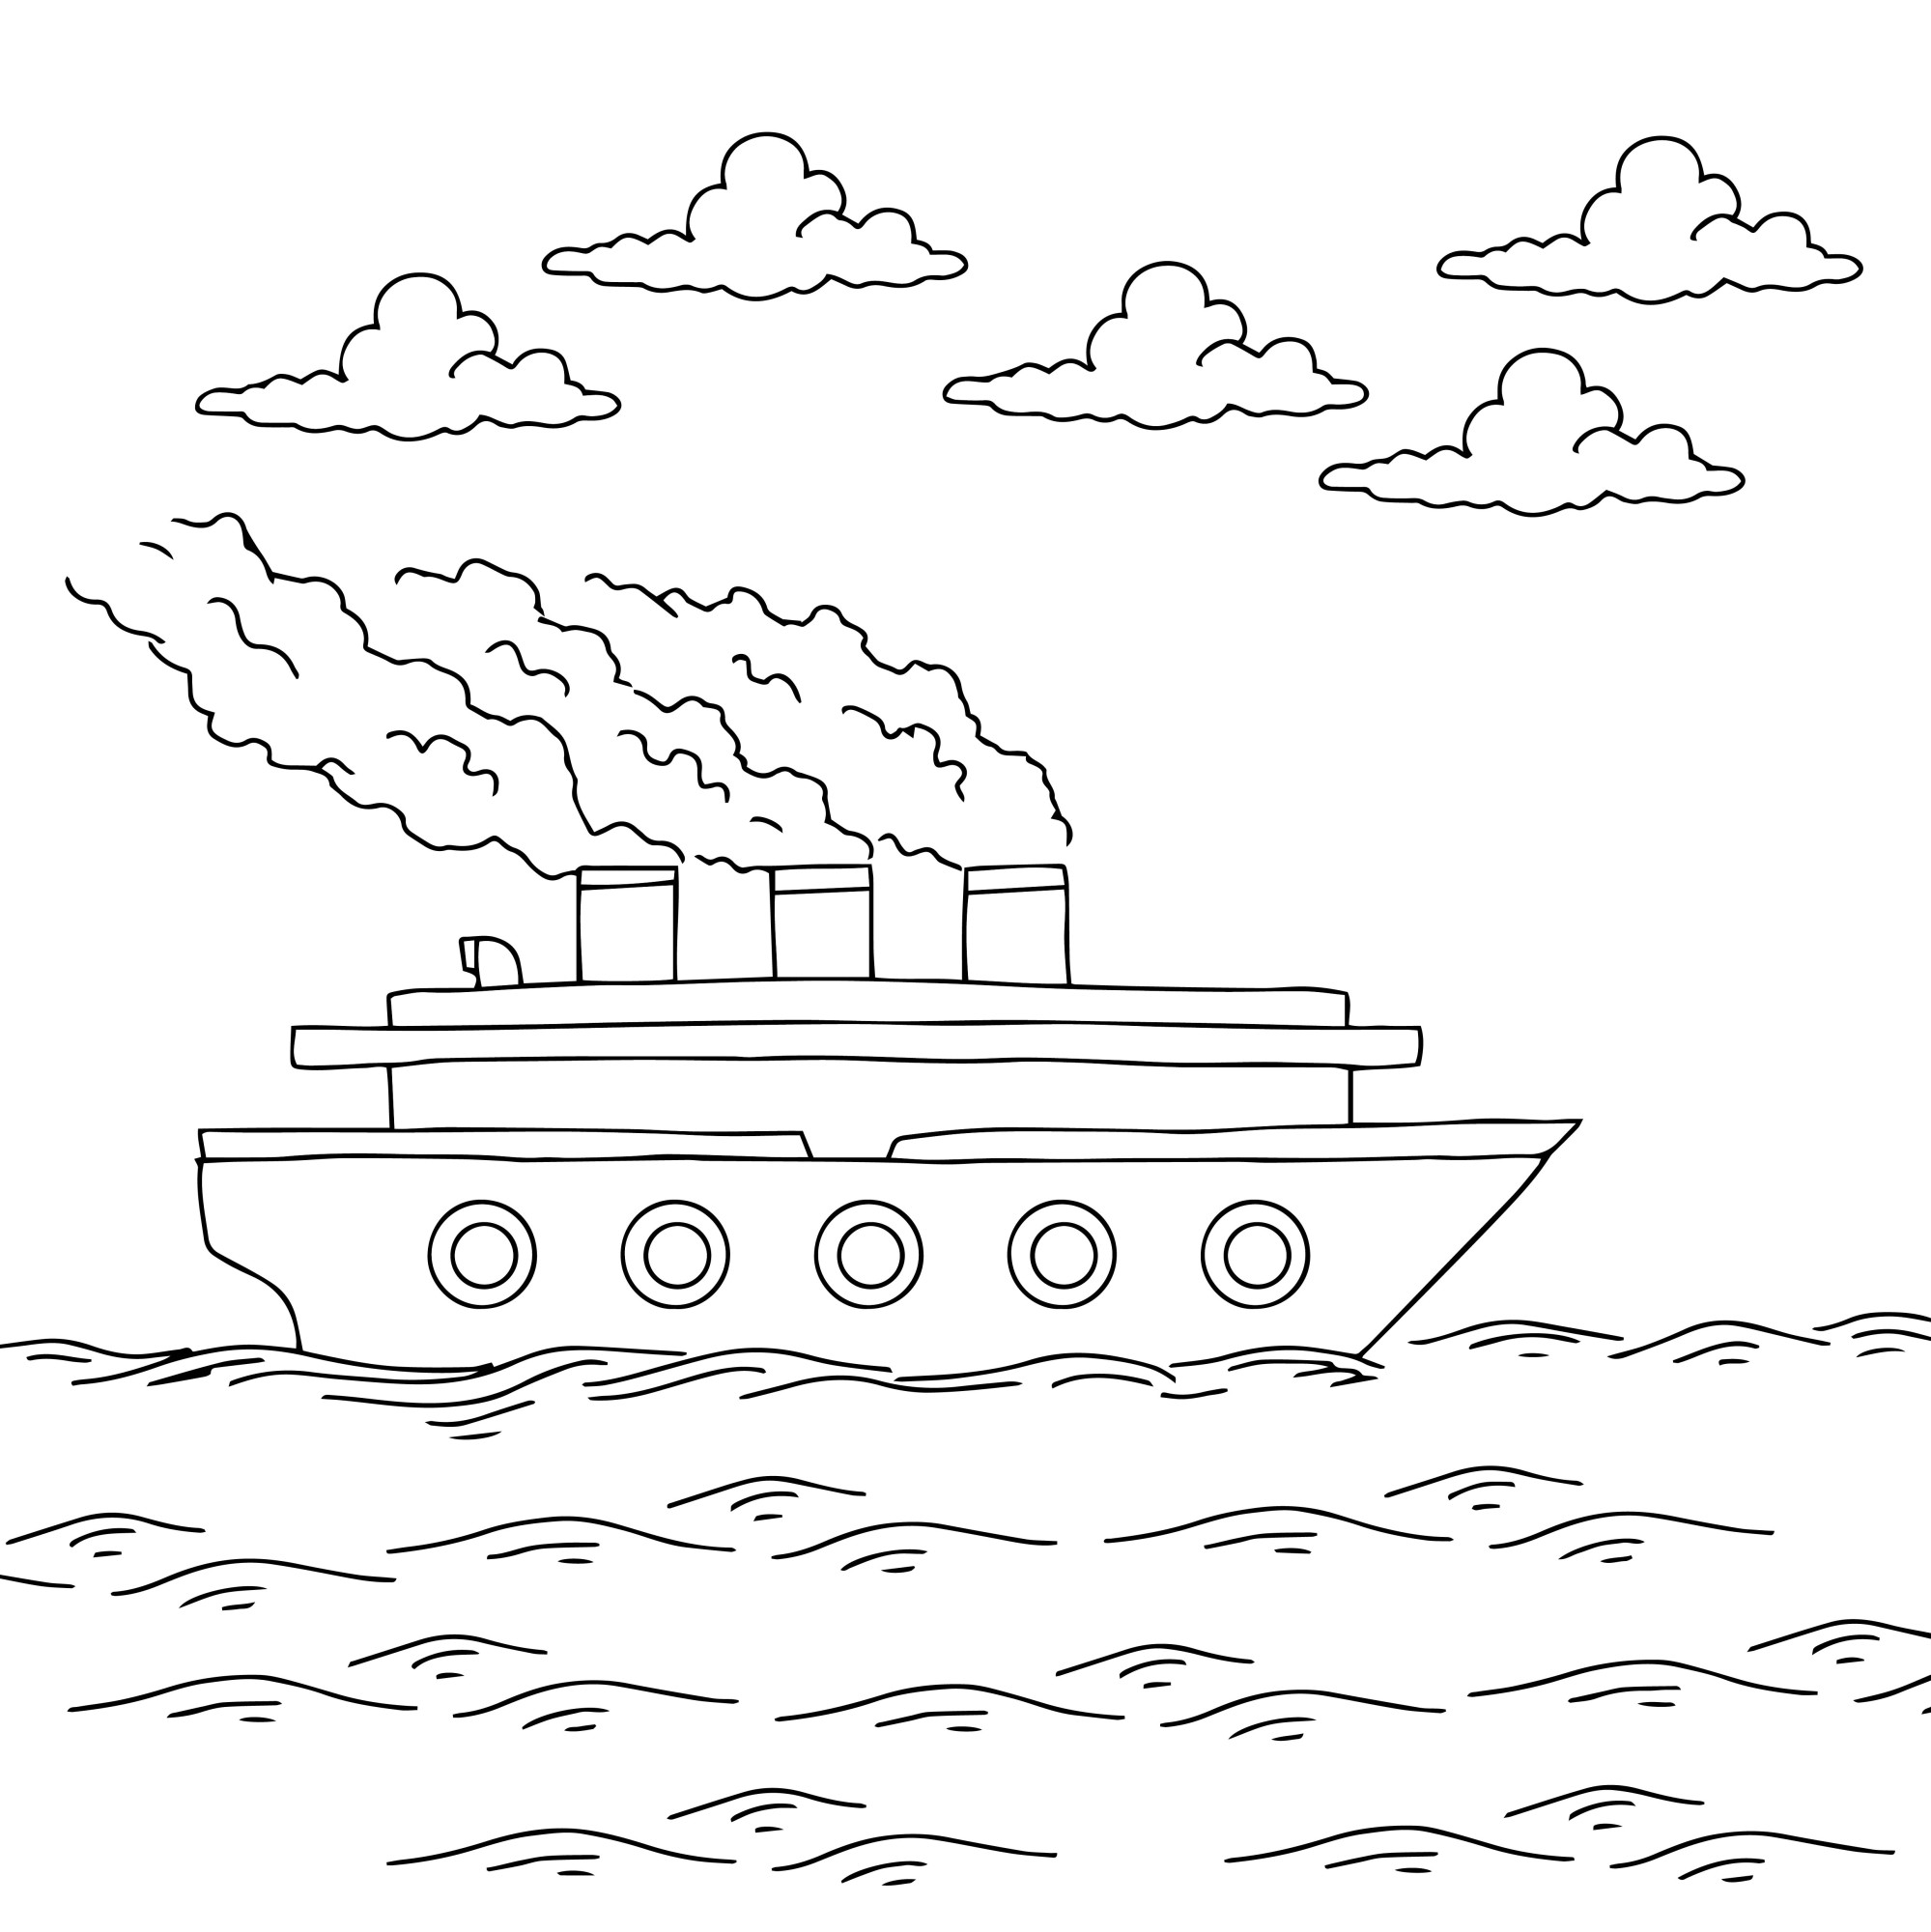 Раскраска для детей: корабль теплоход с большими трубами